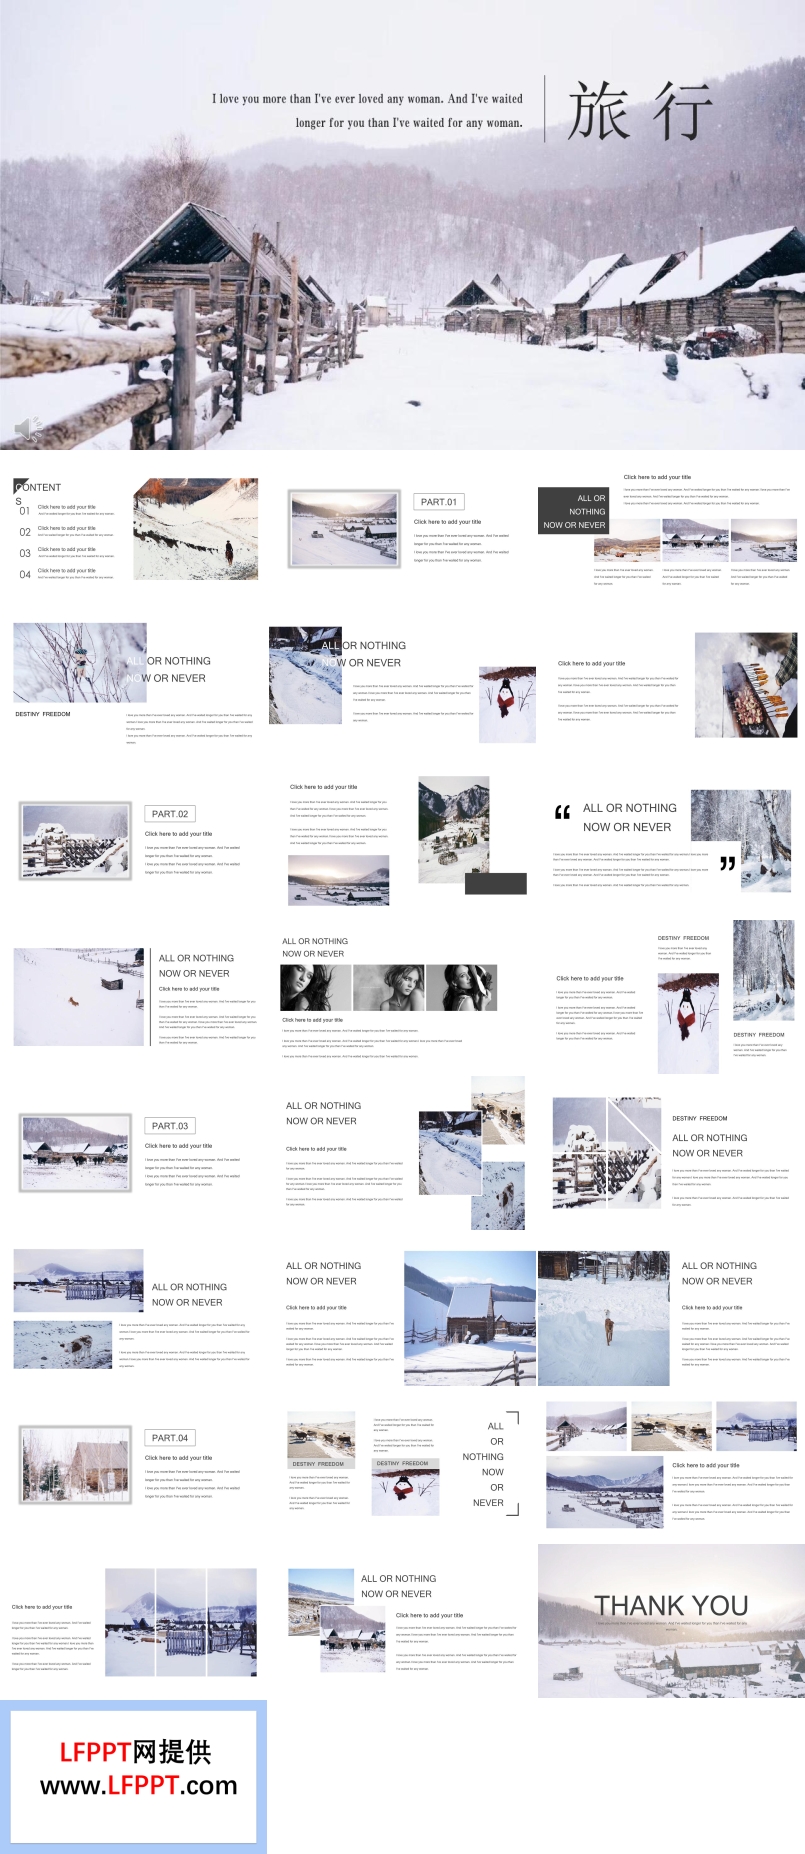 欧美风格雪乡旅游旅行PPT相册模板